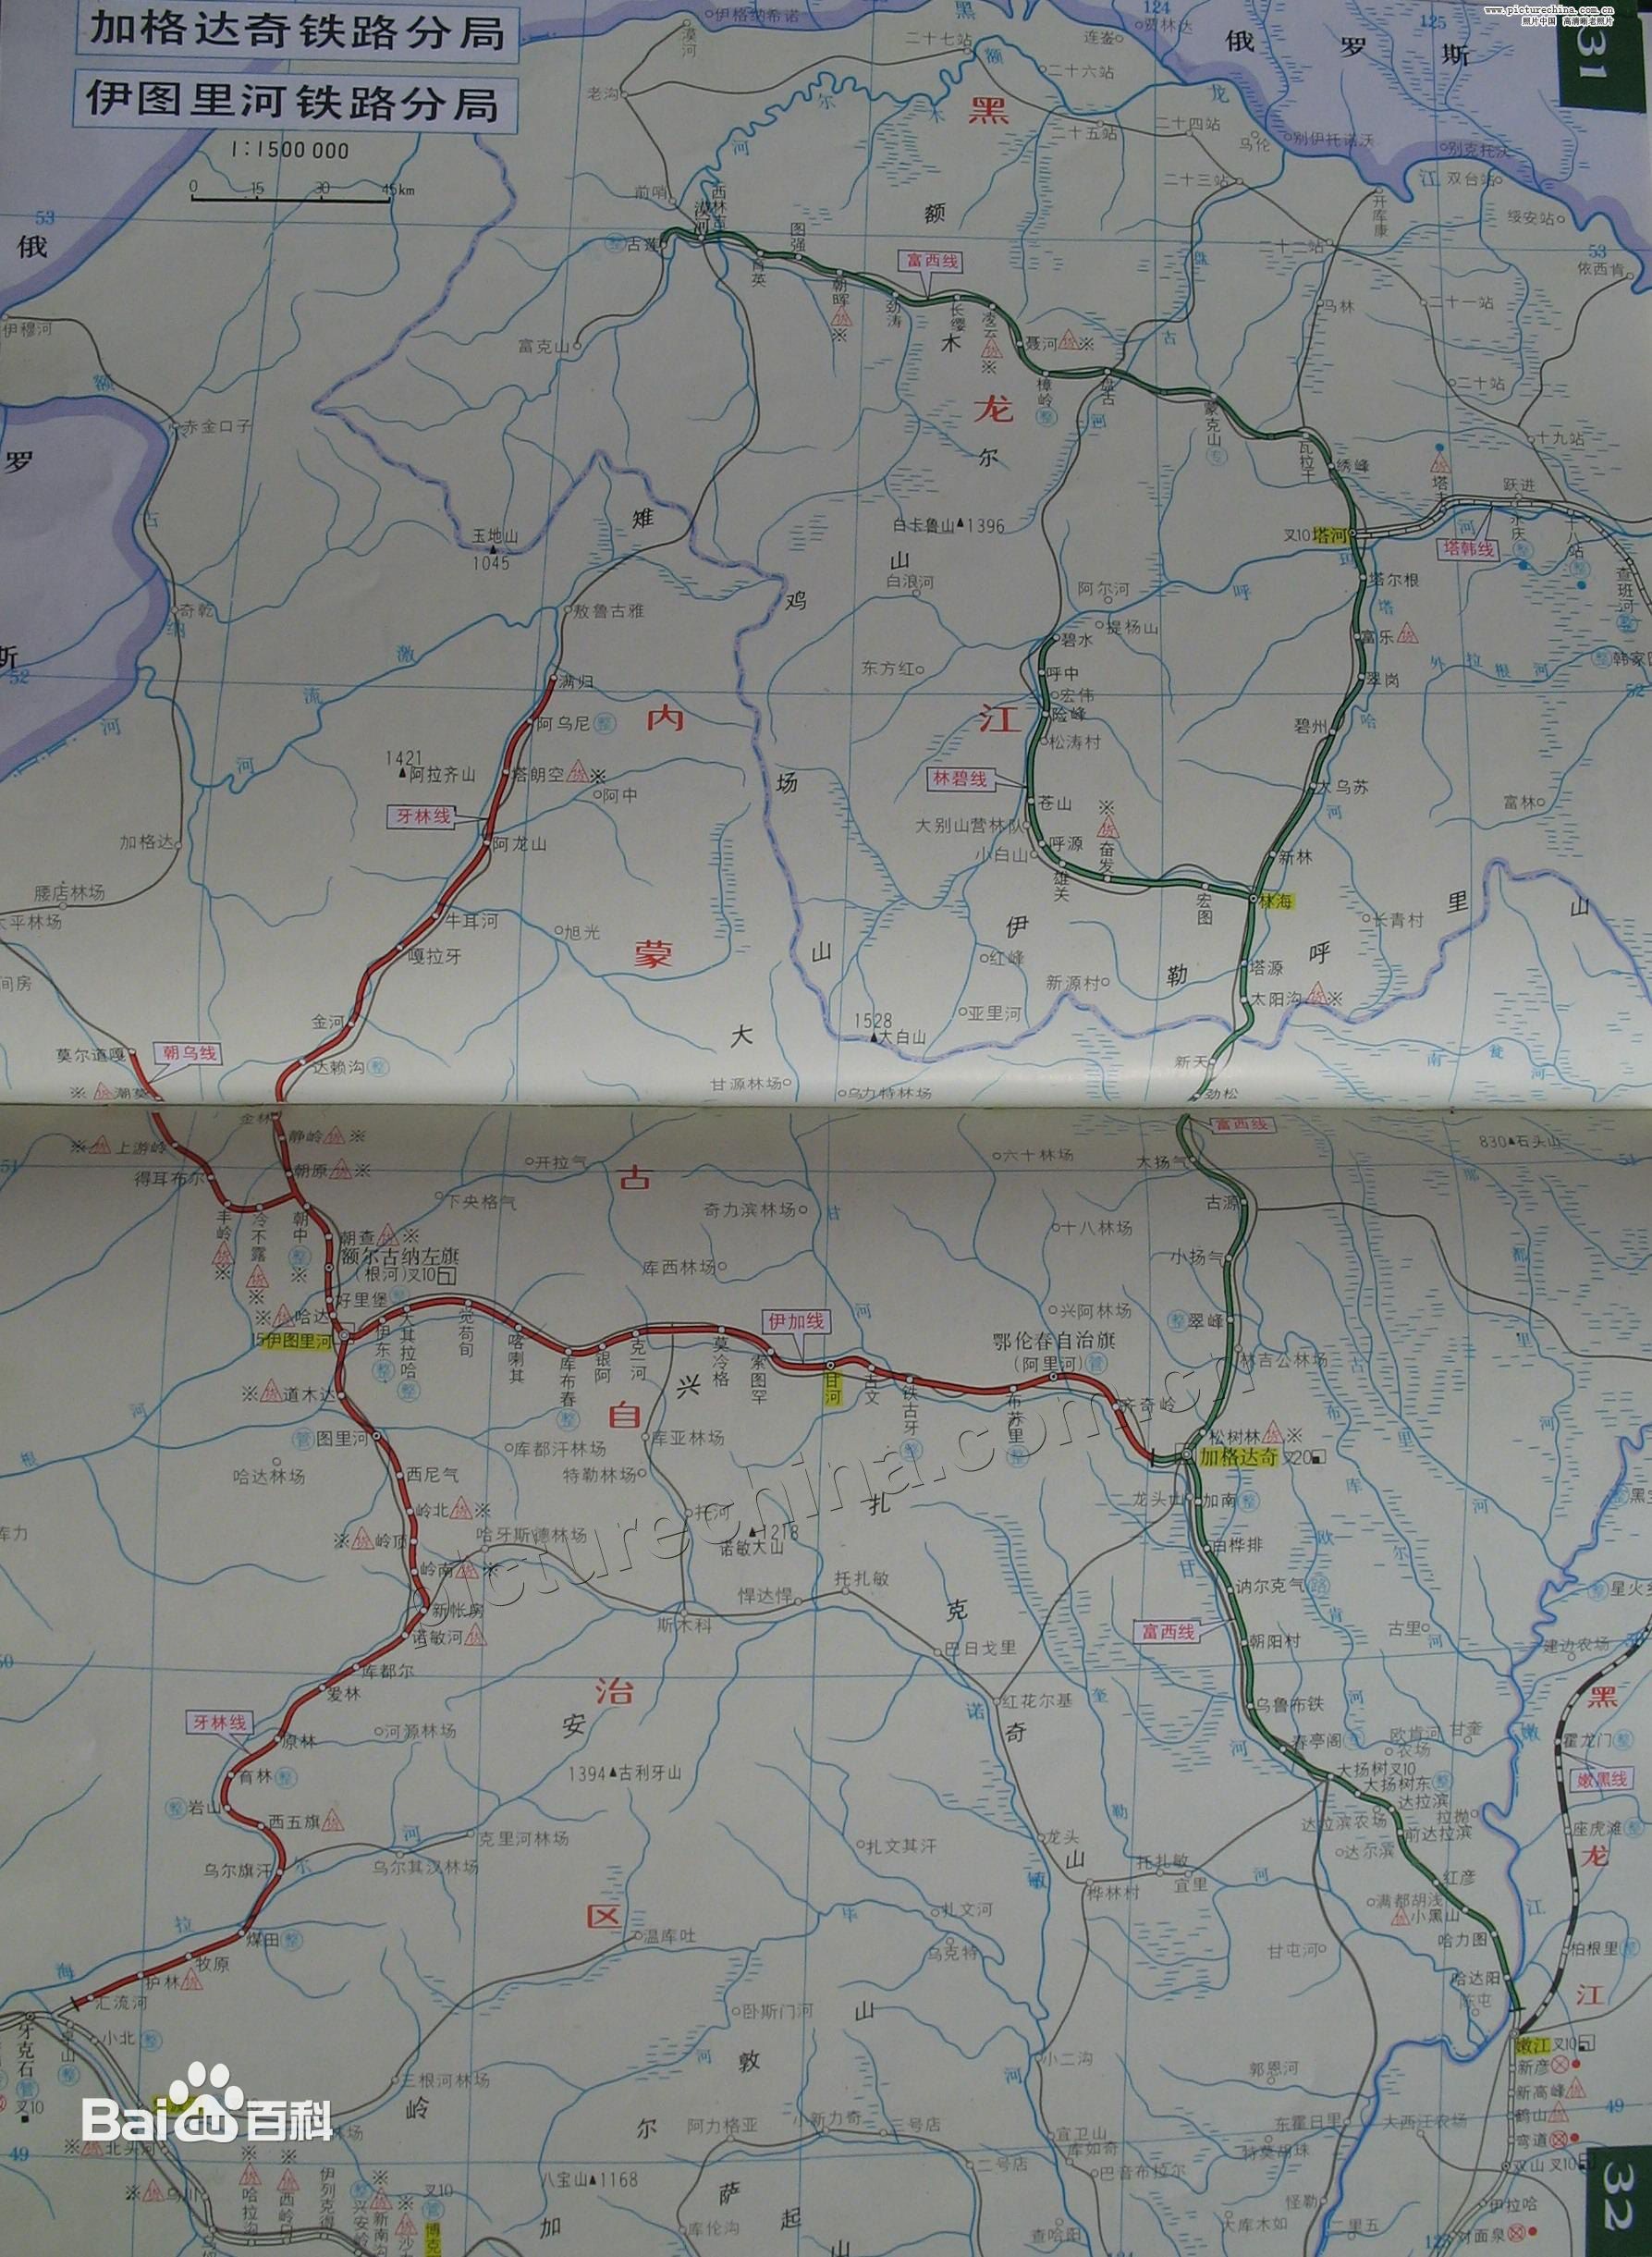 伊圖里河鐵路分局管轄線路圖